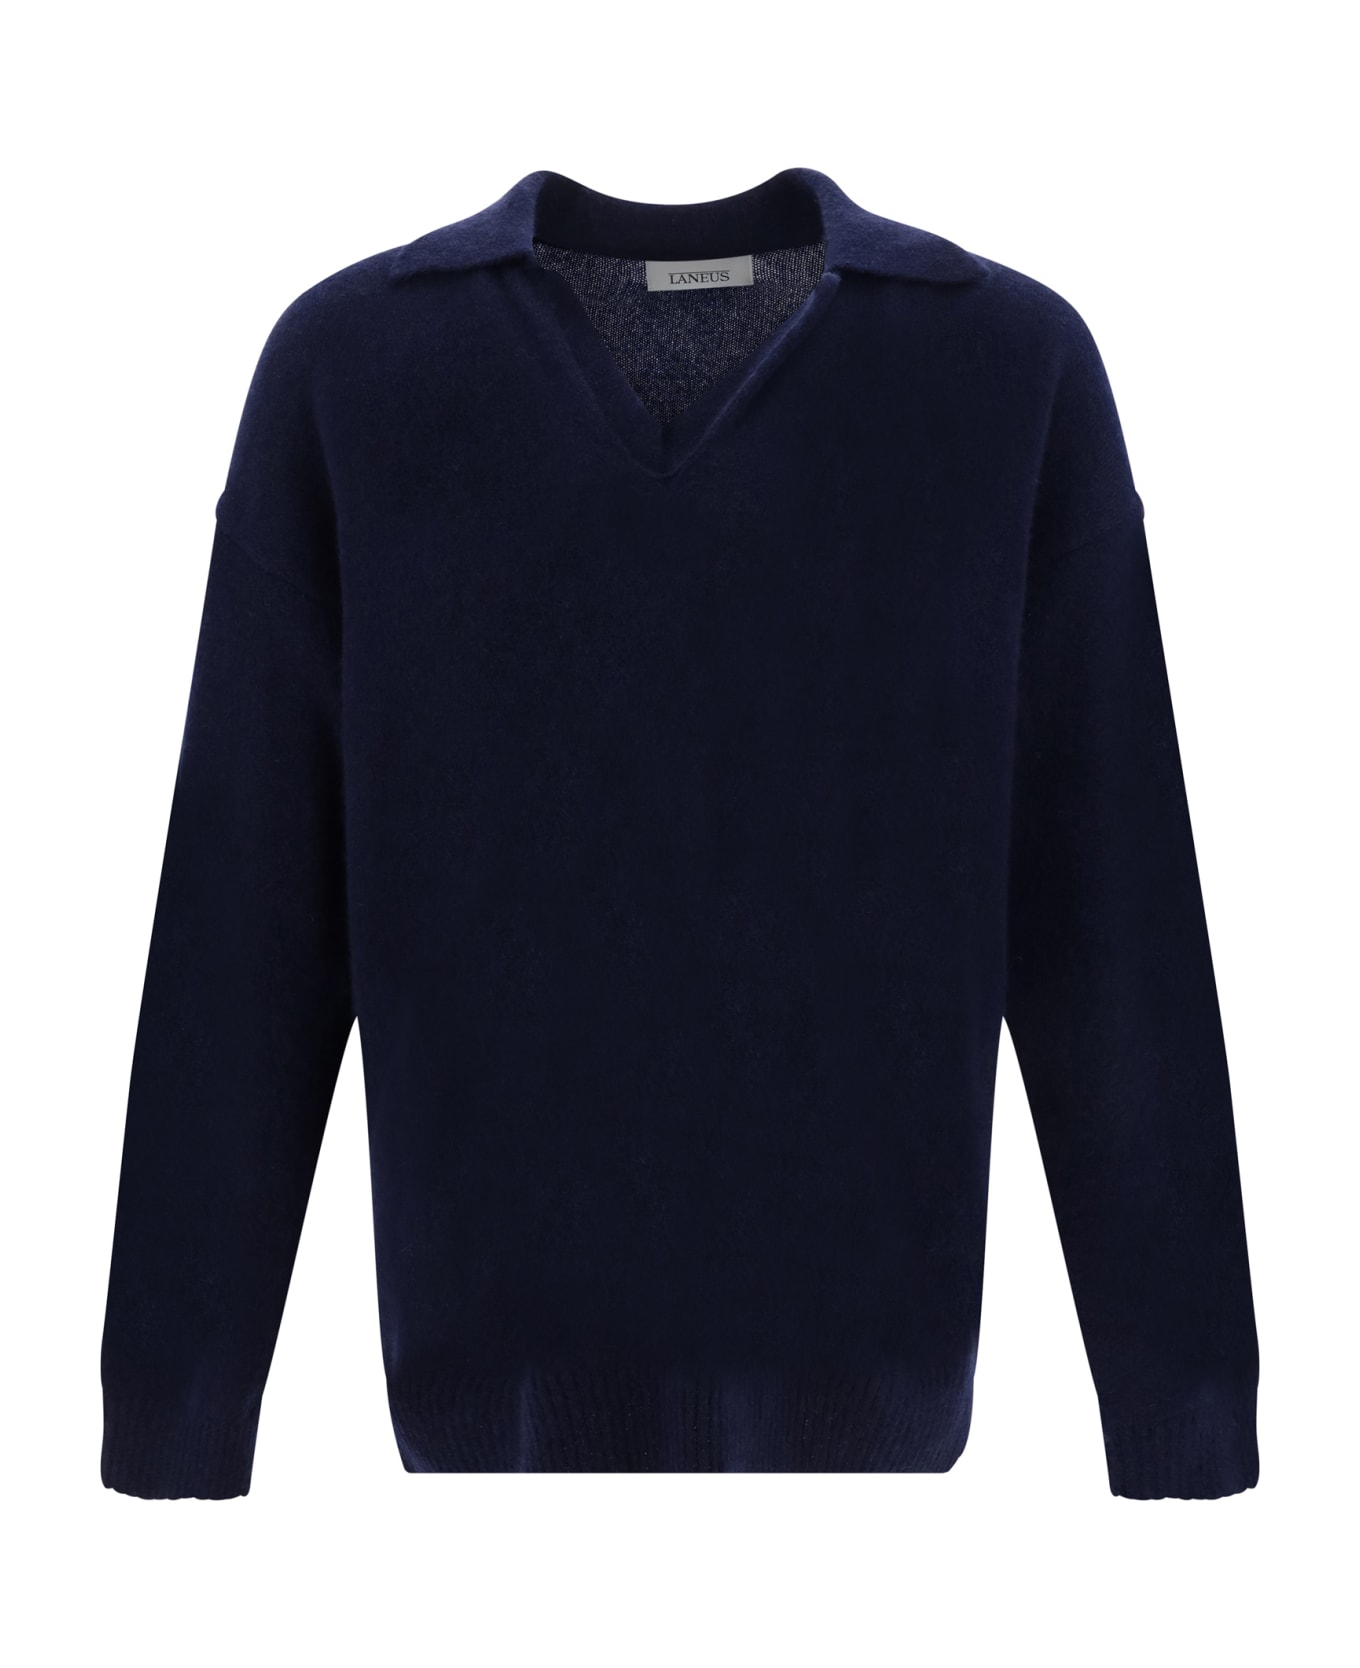 Laneus Sweater - Blu Navy